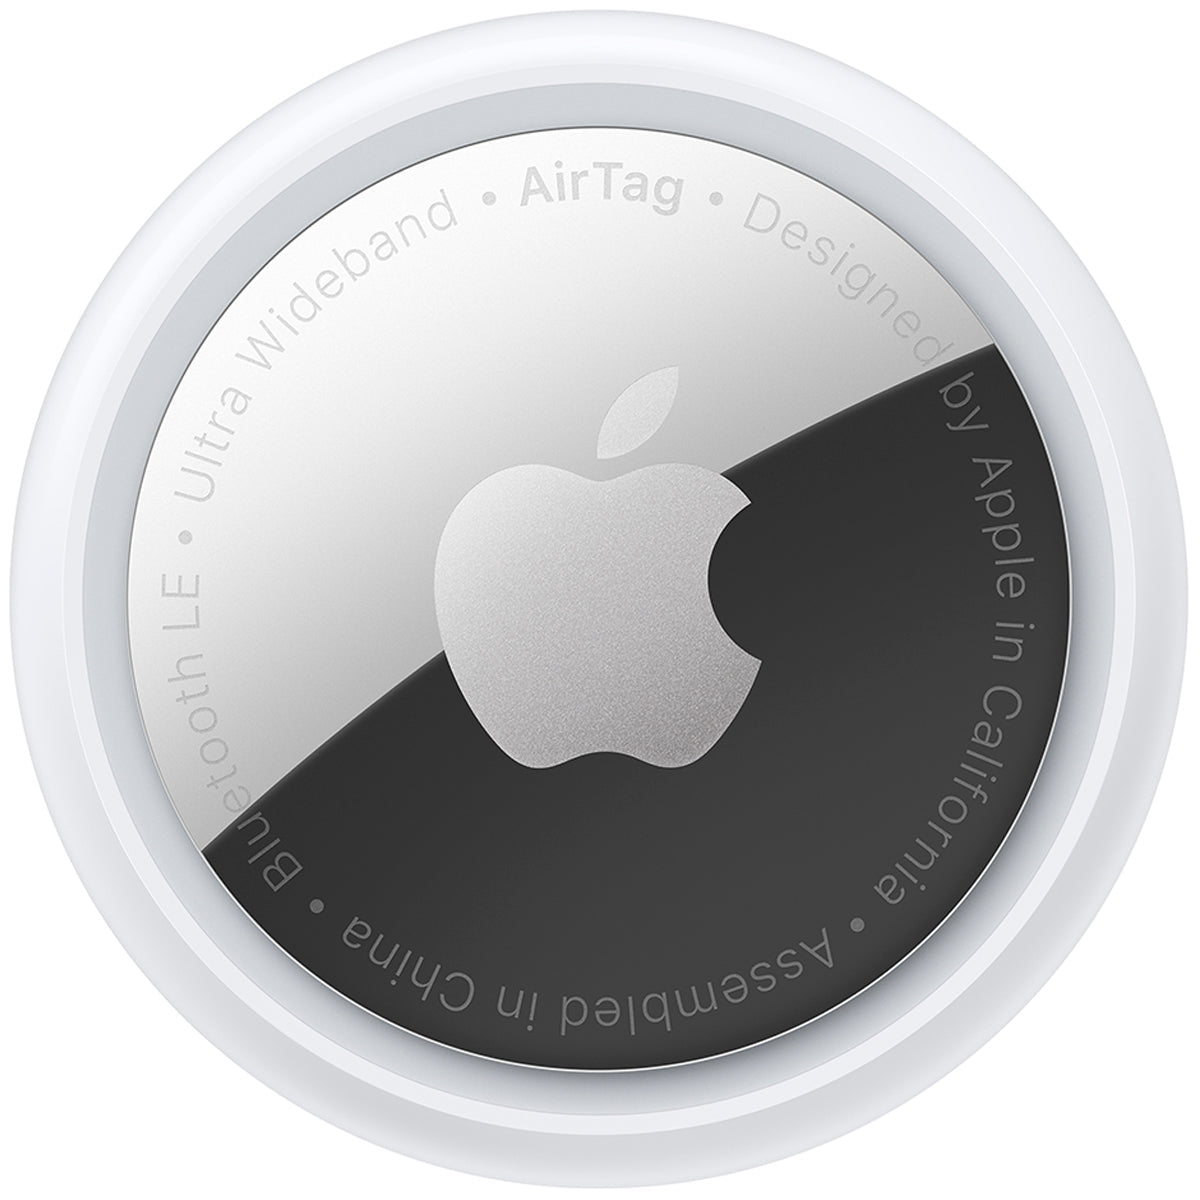 O AirTag da Apple, é ideal para rastrear objetos perdidos. Anexe-o a chaves, carteiras e muito mais, e use o aplicativo 'Localizar' para mantê-los sempre ao alcance.